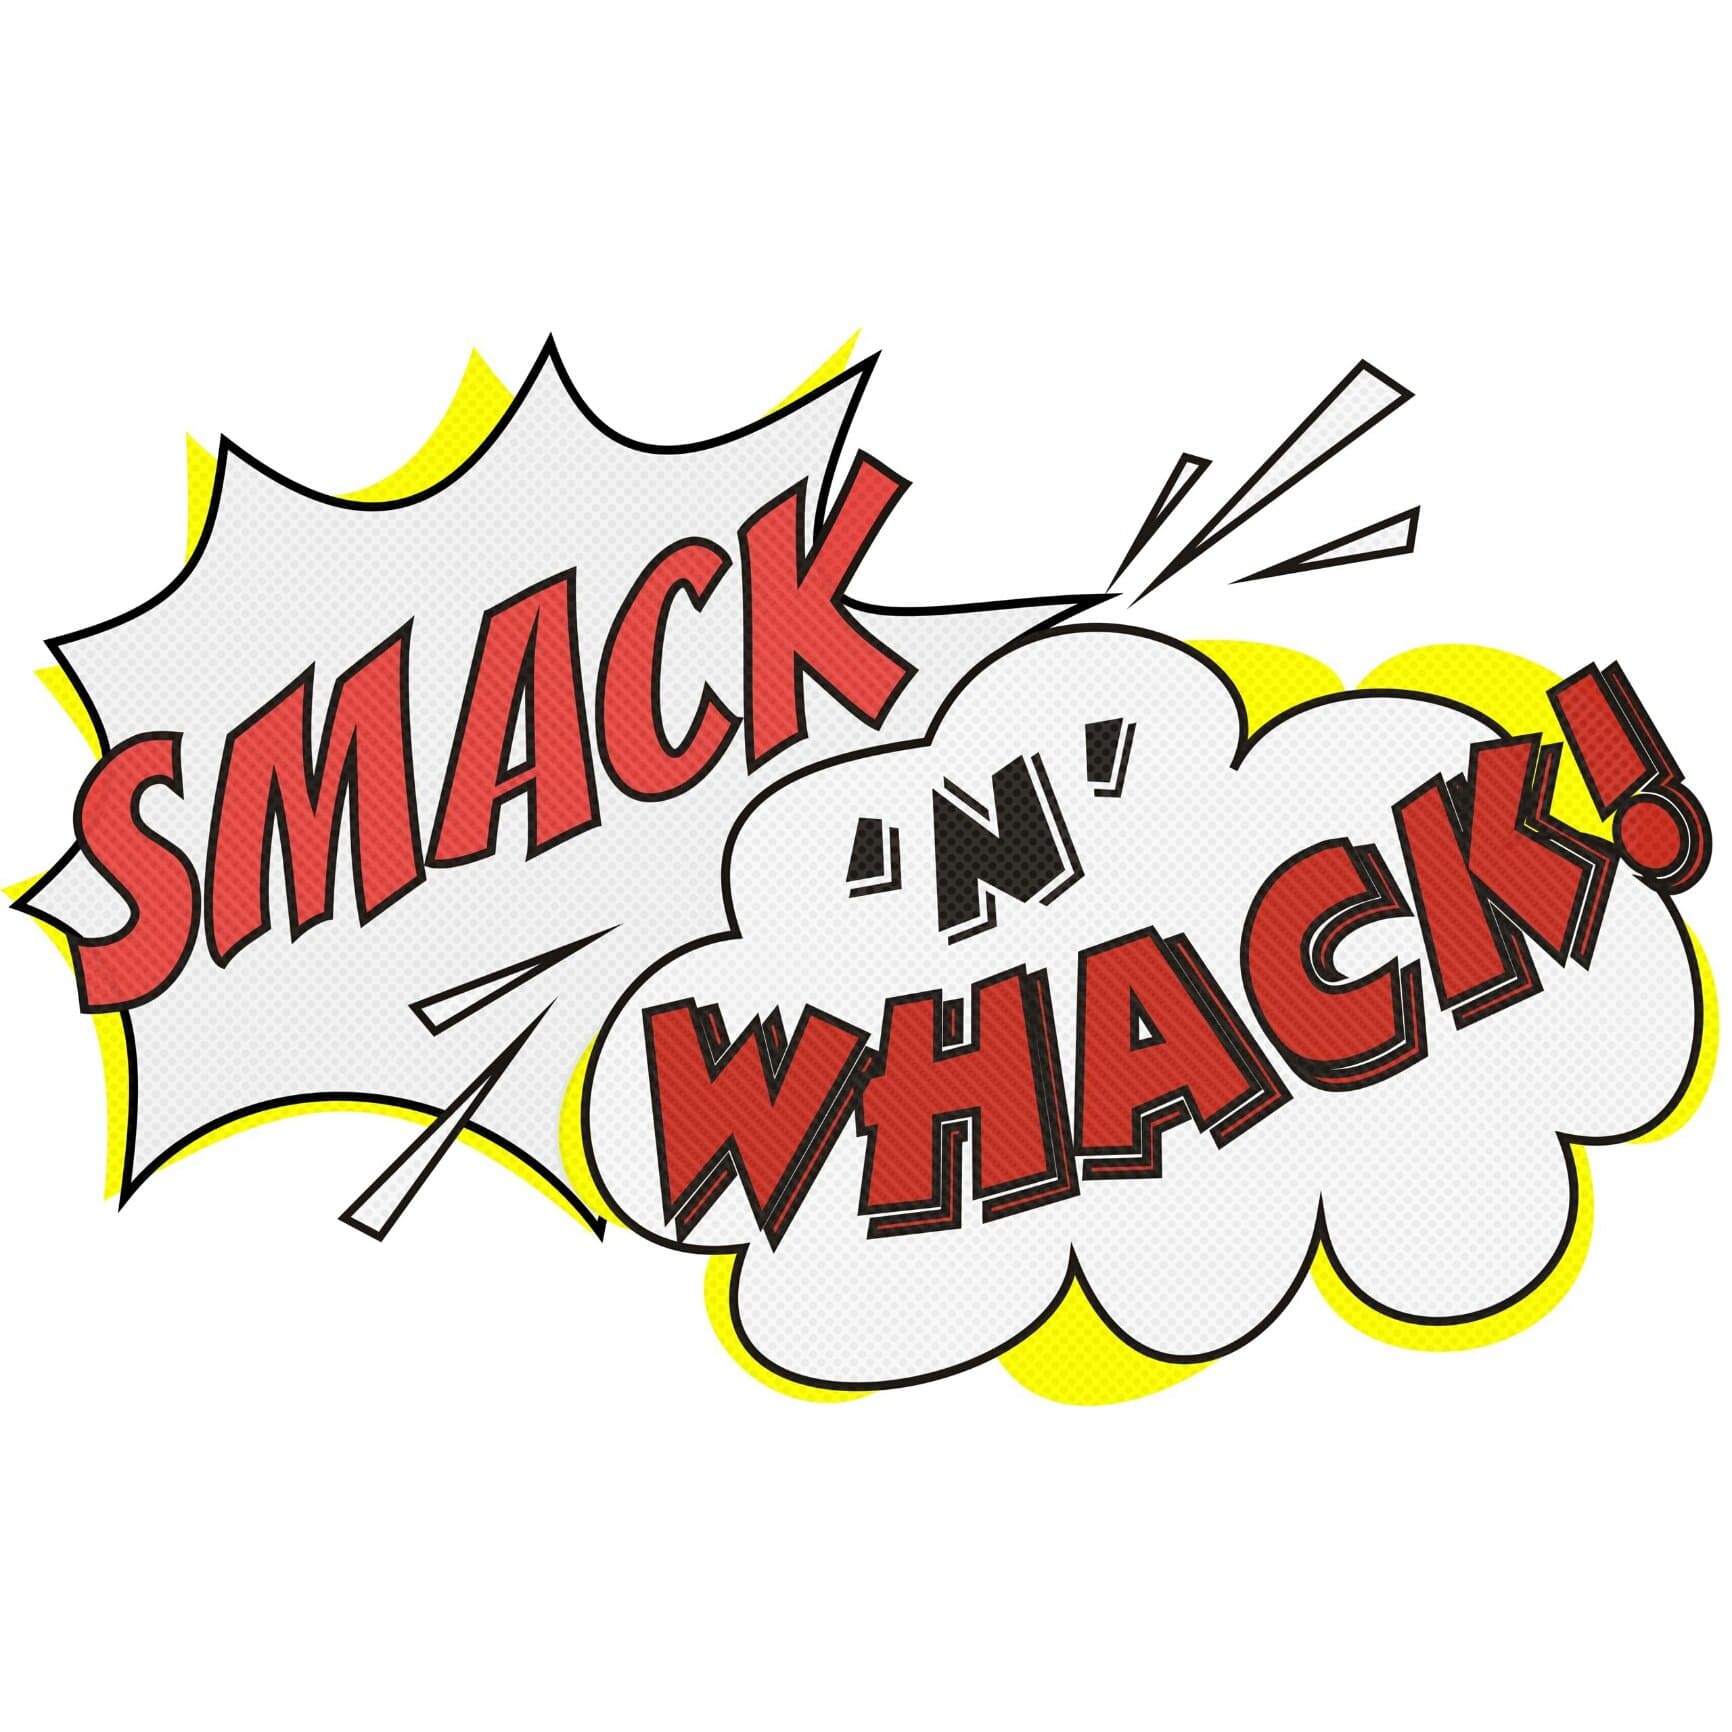 Smack'n'whack